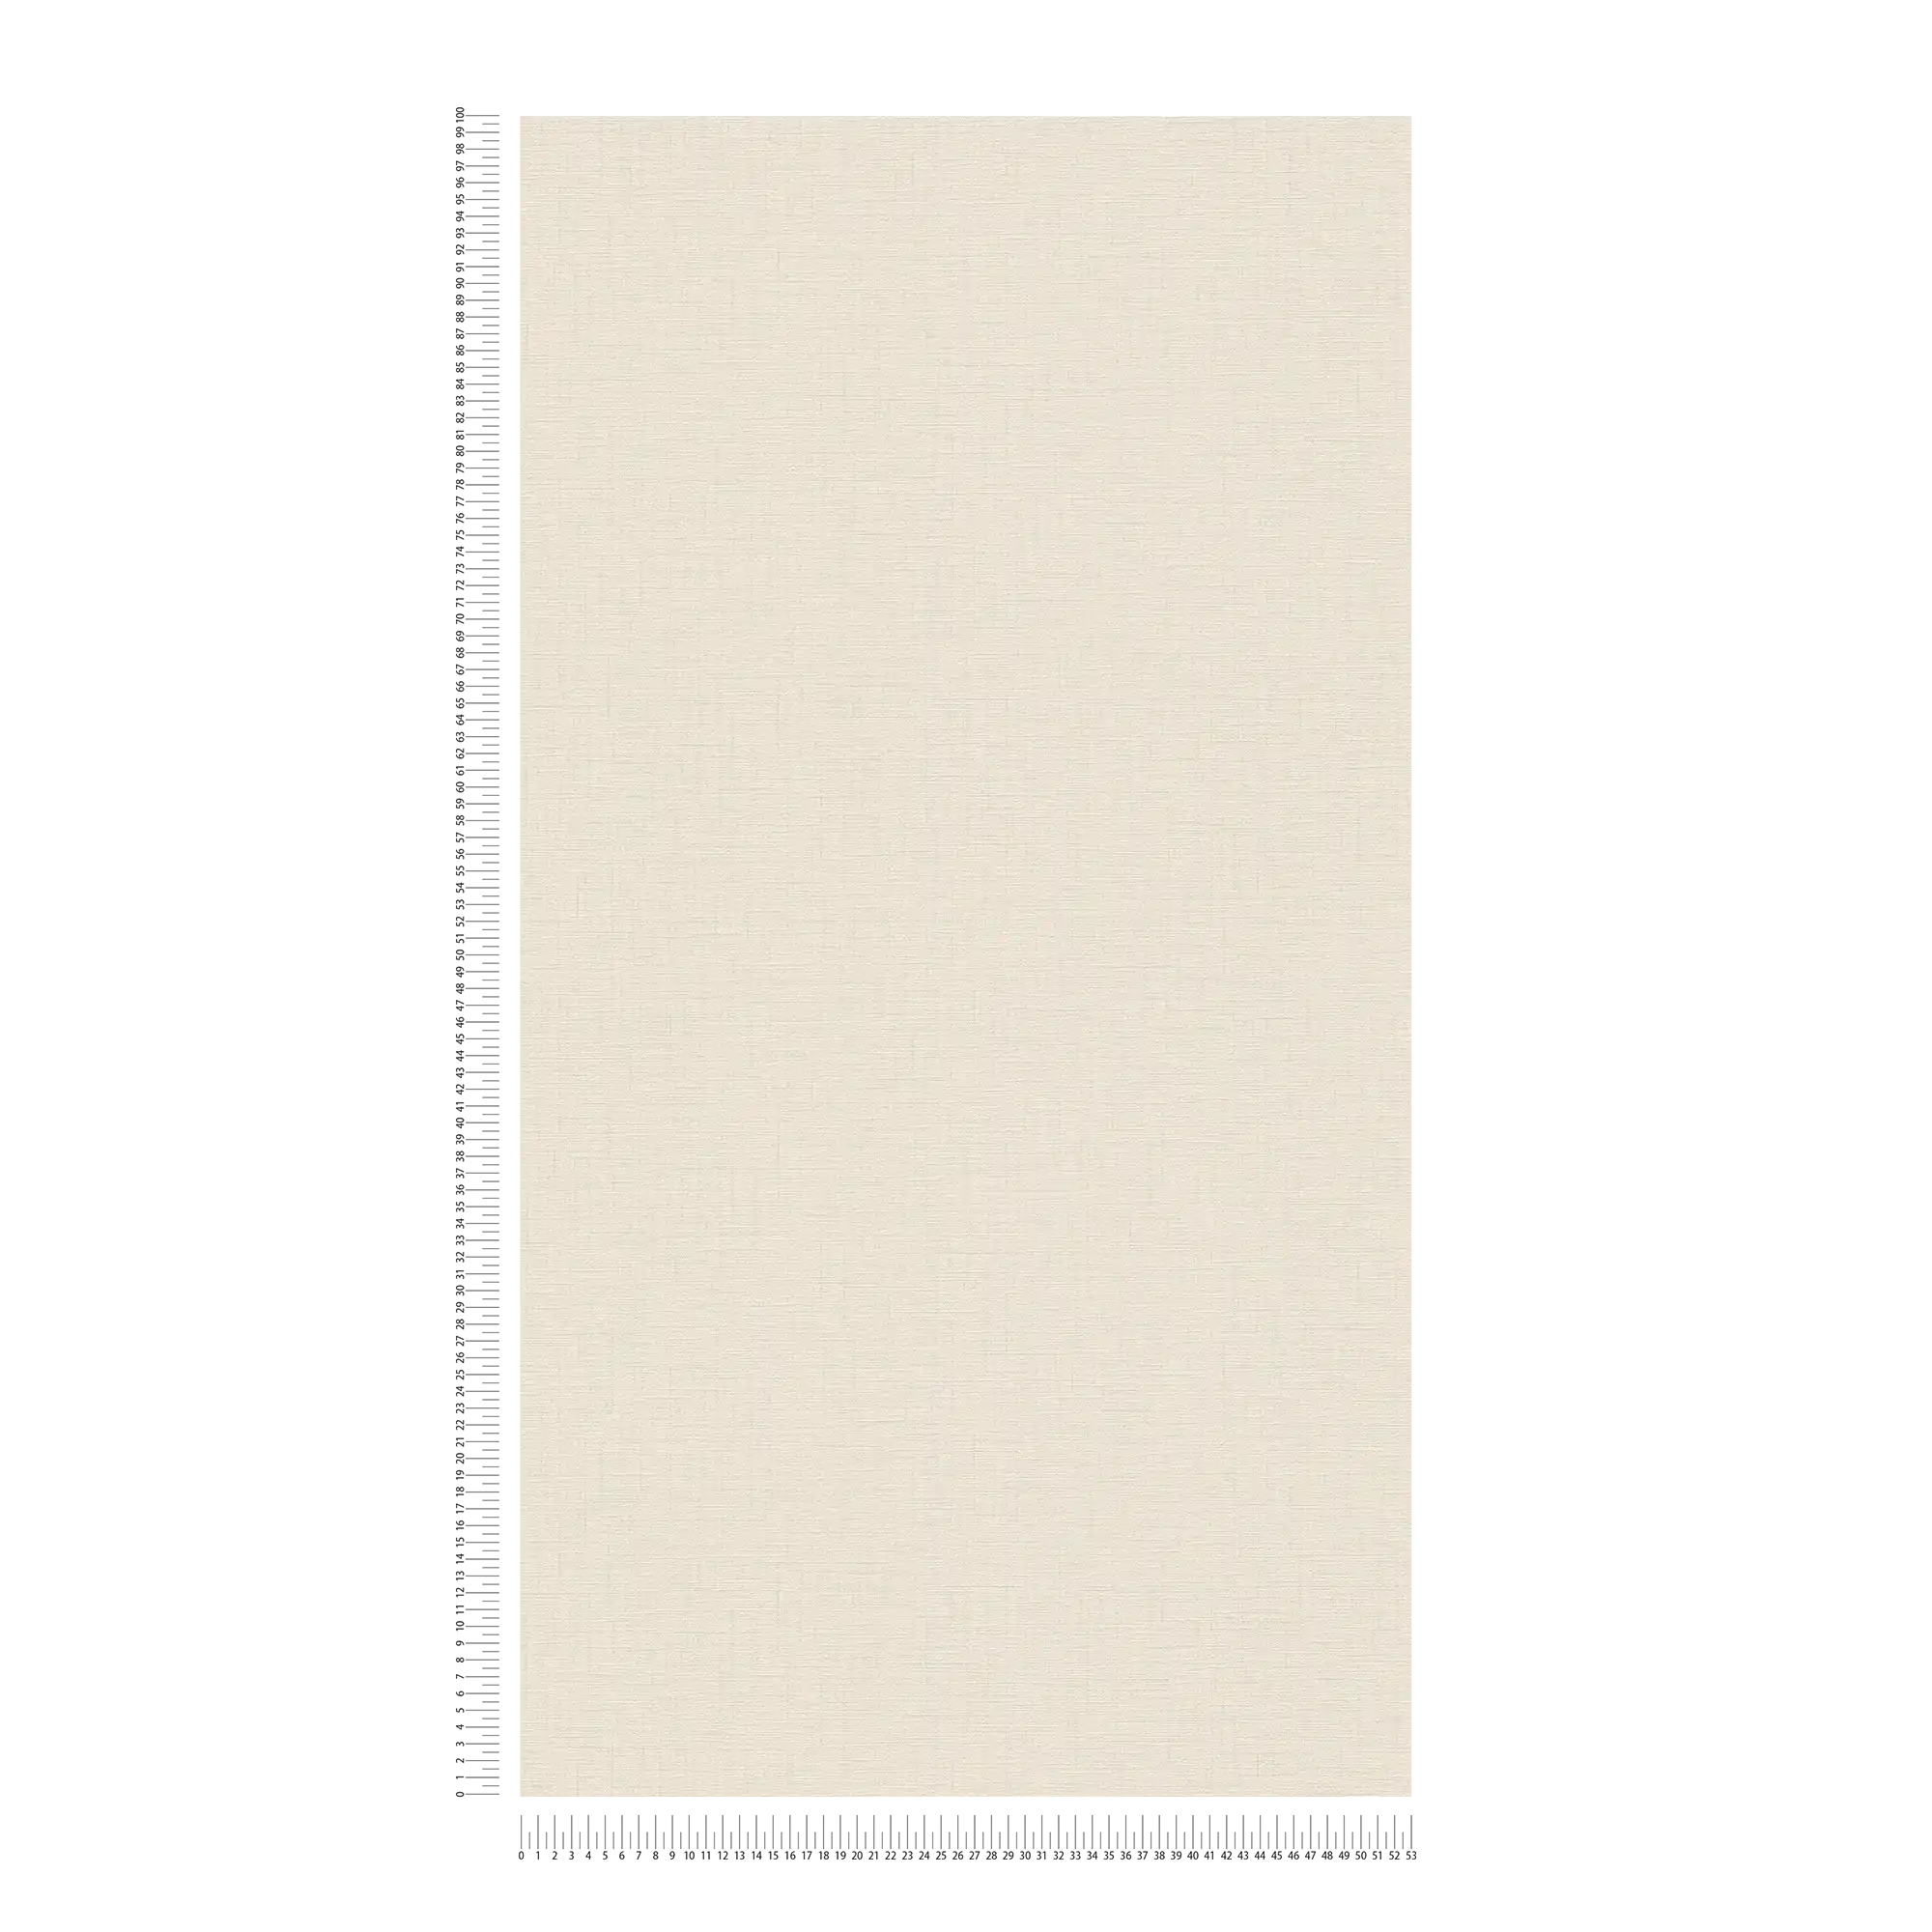             Light beige wallpaper plain mottled with linen texture
        